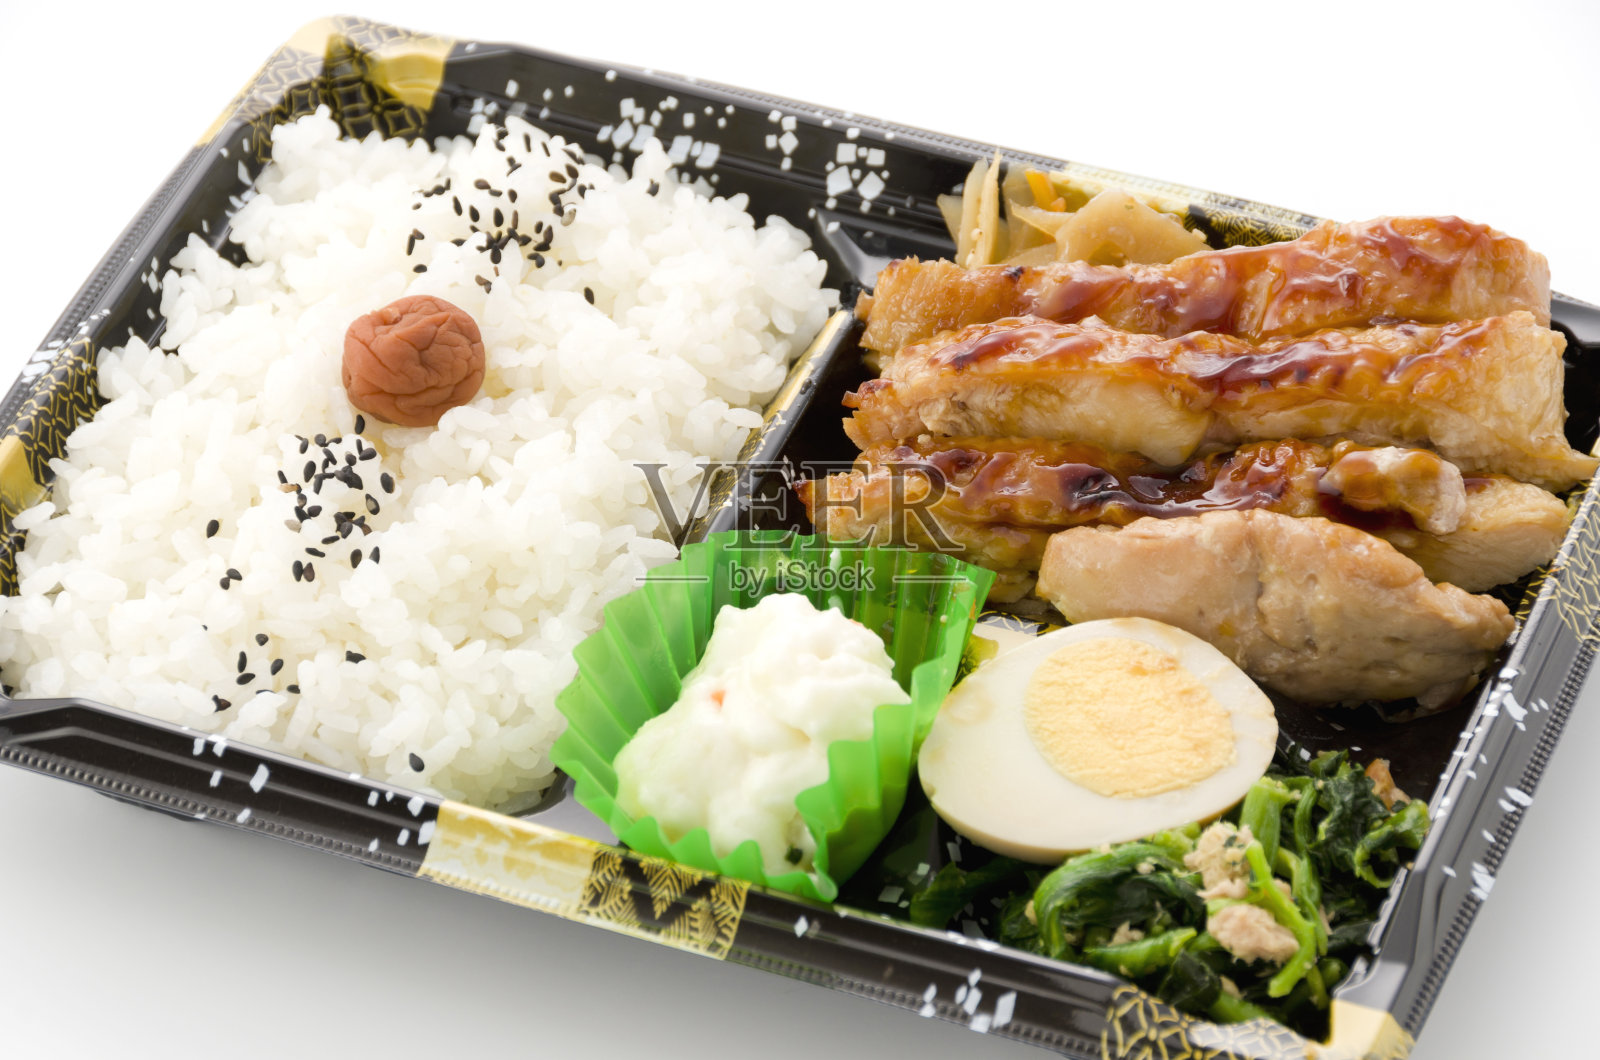 日式ZAKKA便当盒 学生餐盒木质寿司盒 日式盒饭餐具批发-阿里巴巴